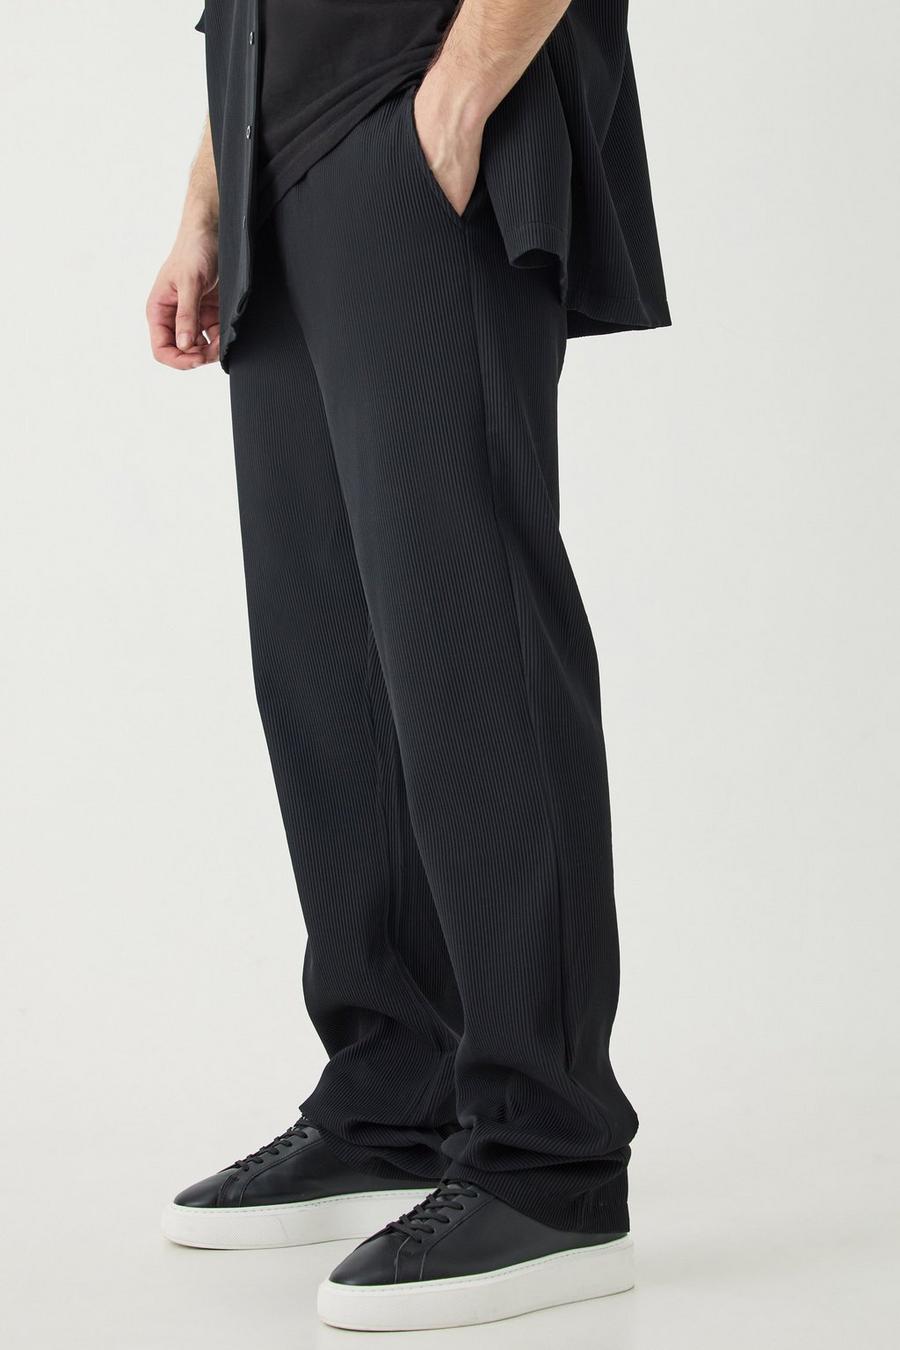 Tall Slim-Fit Schlaghose mit elastischem Bund, Black